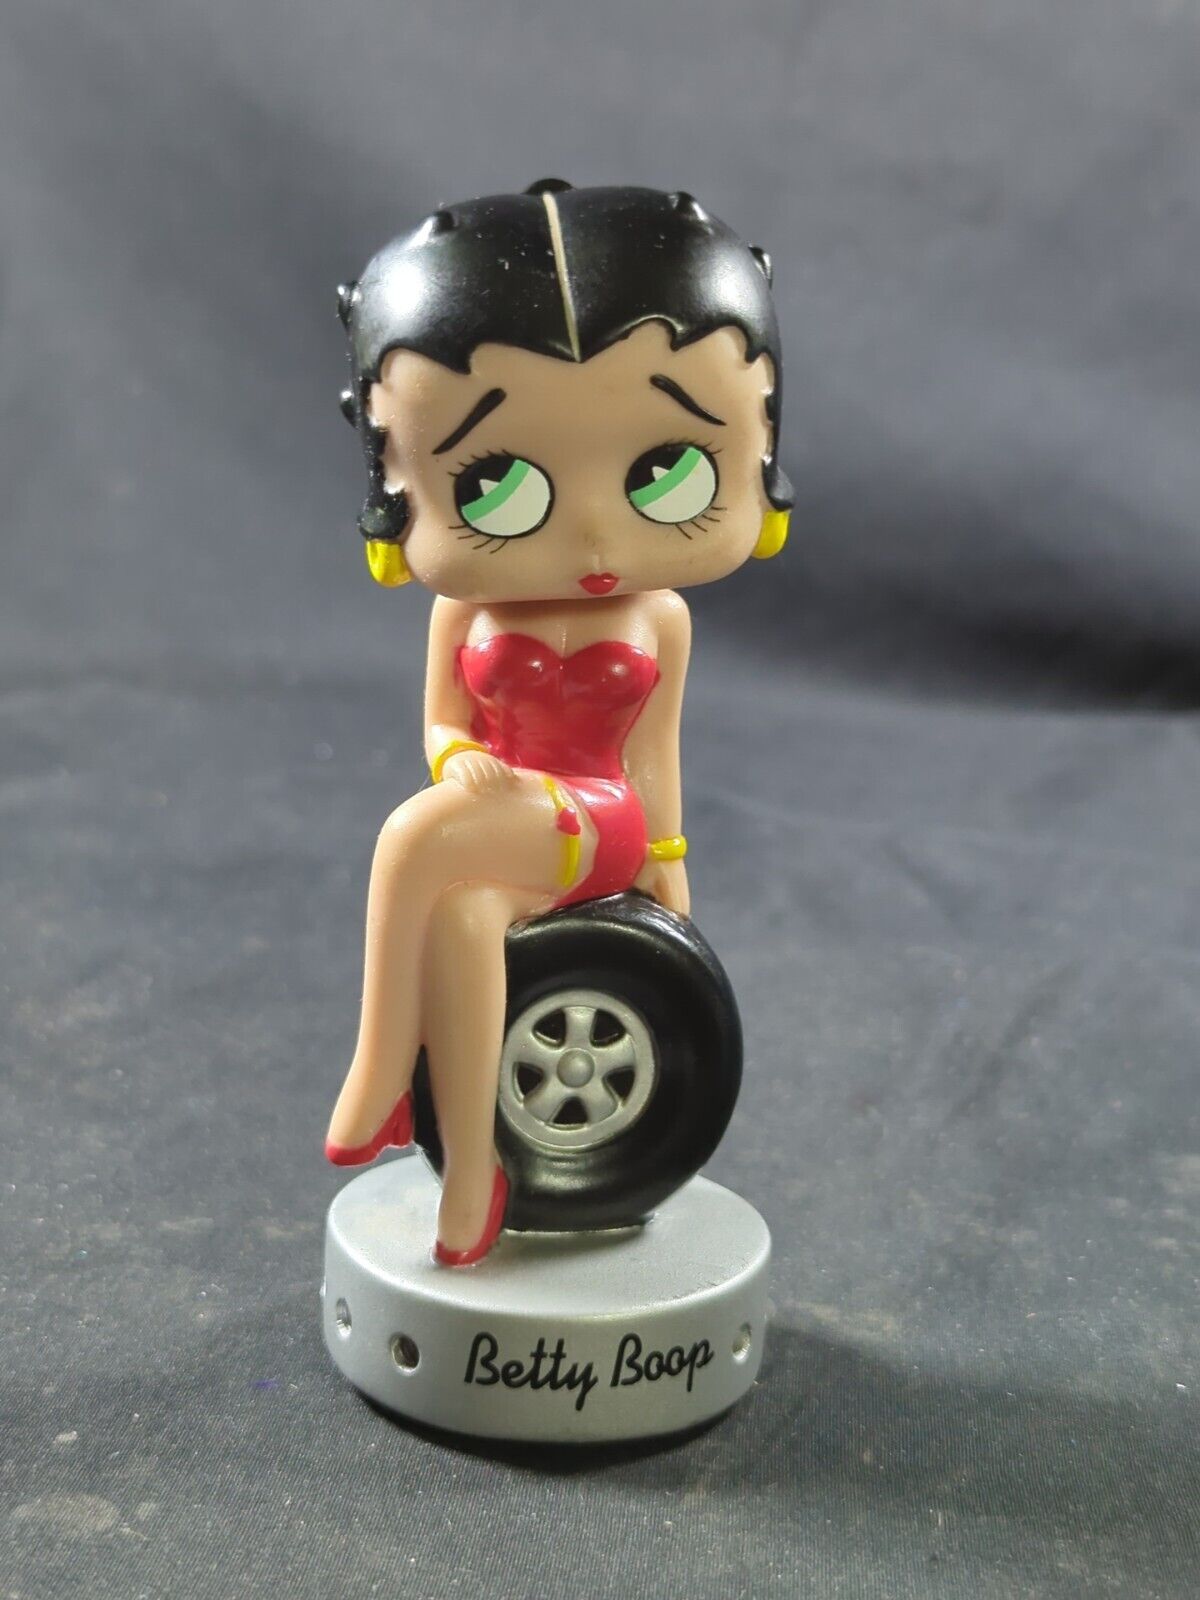 2006 Funko Wacky Wobbler Bobble Head Betty Boop Sitting On Tire Unique Read